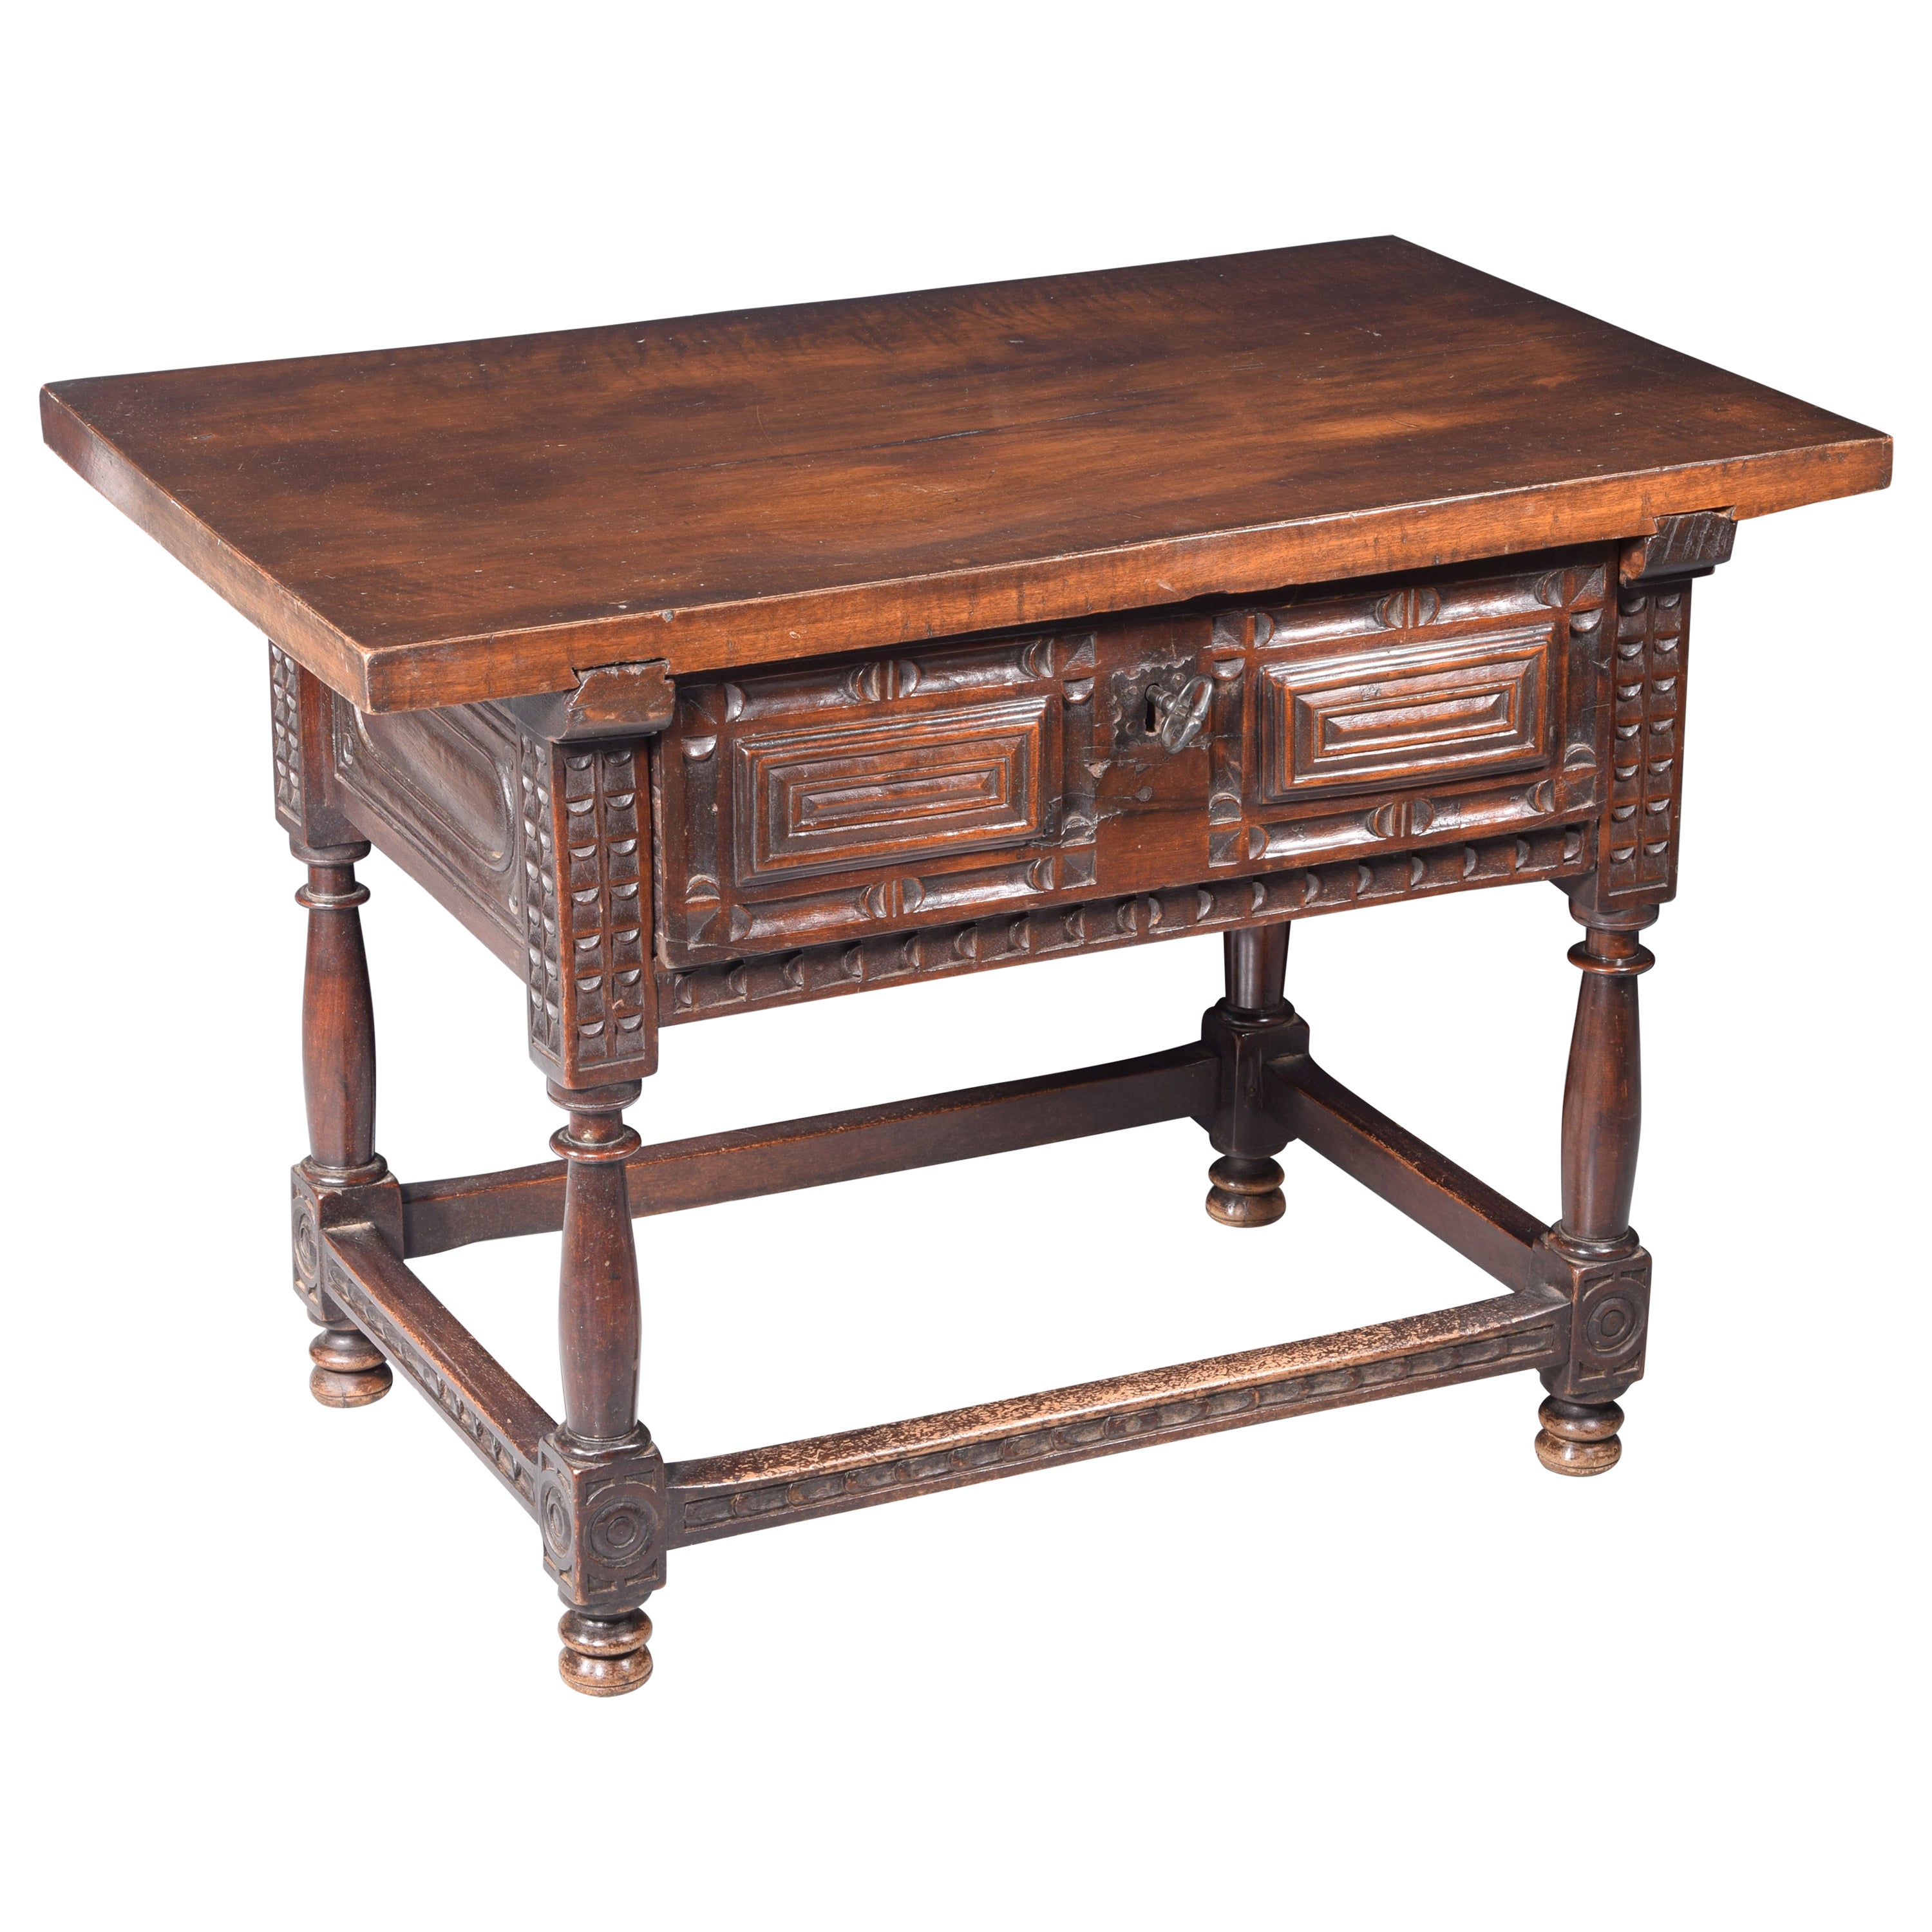 Castilian table. Walnut wood, iron. Spain, 17th century. 